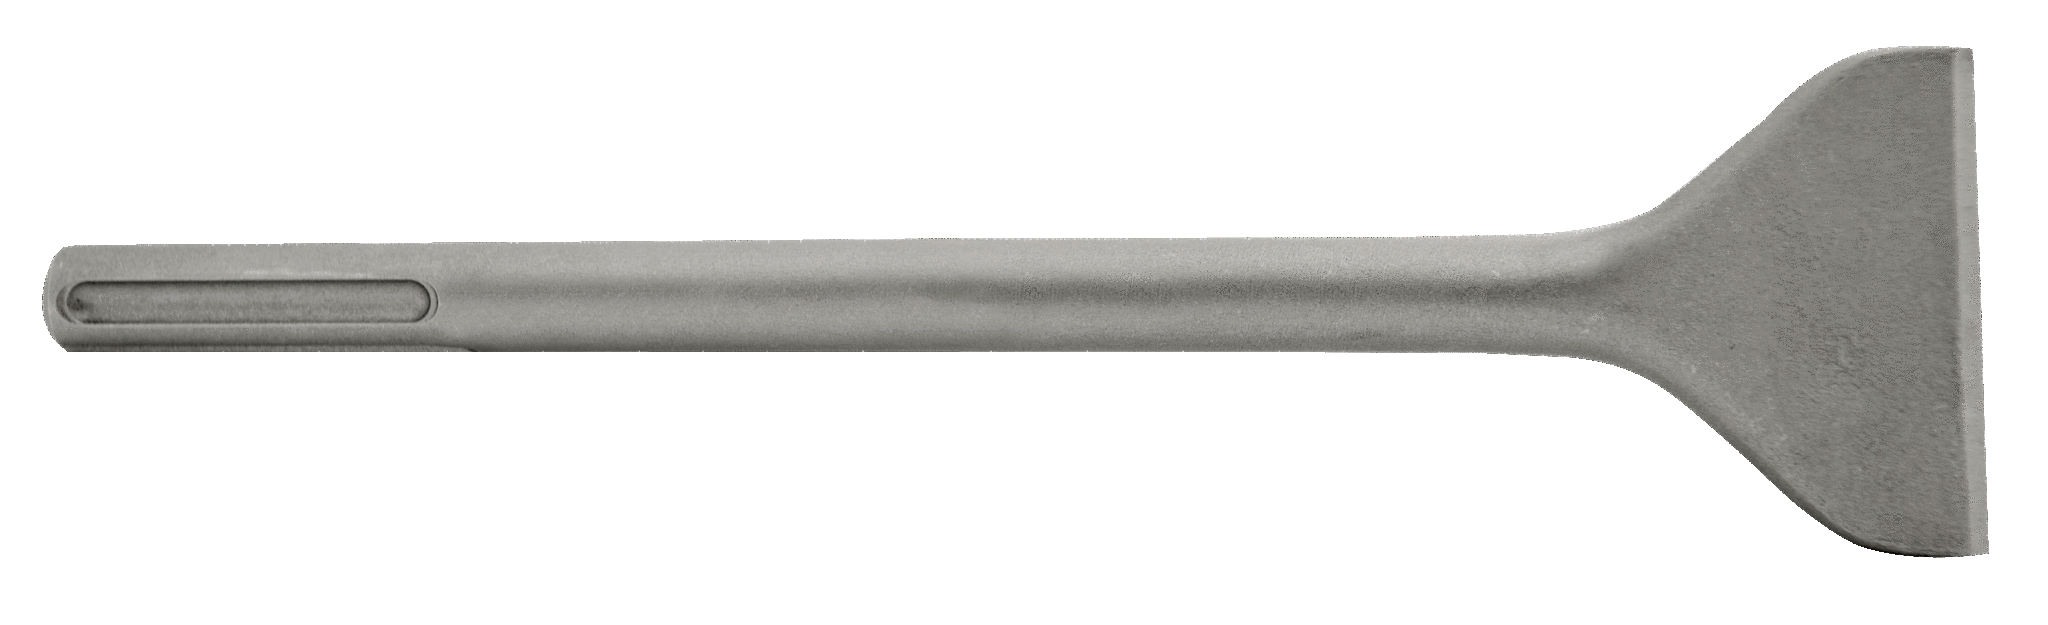 WERHE ® Professional SDS Max set de pointes de burin 3 pièces 18 20 50 x 600 mm pointe de burin à froid buse plate pour marteau de démolition 